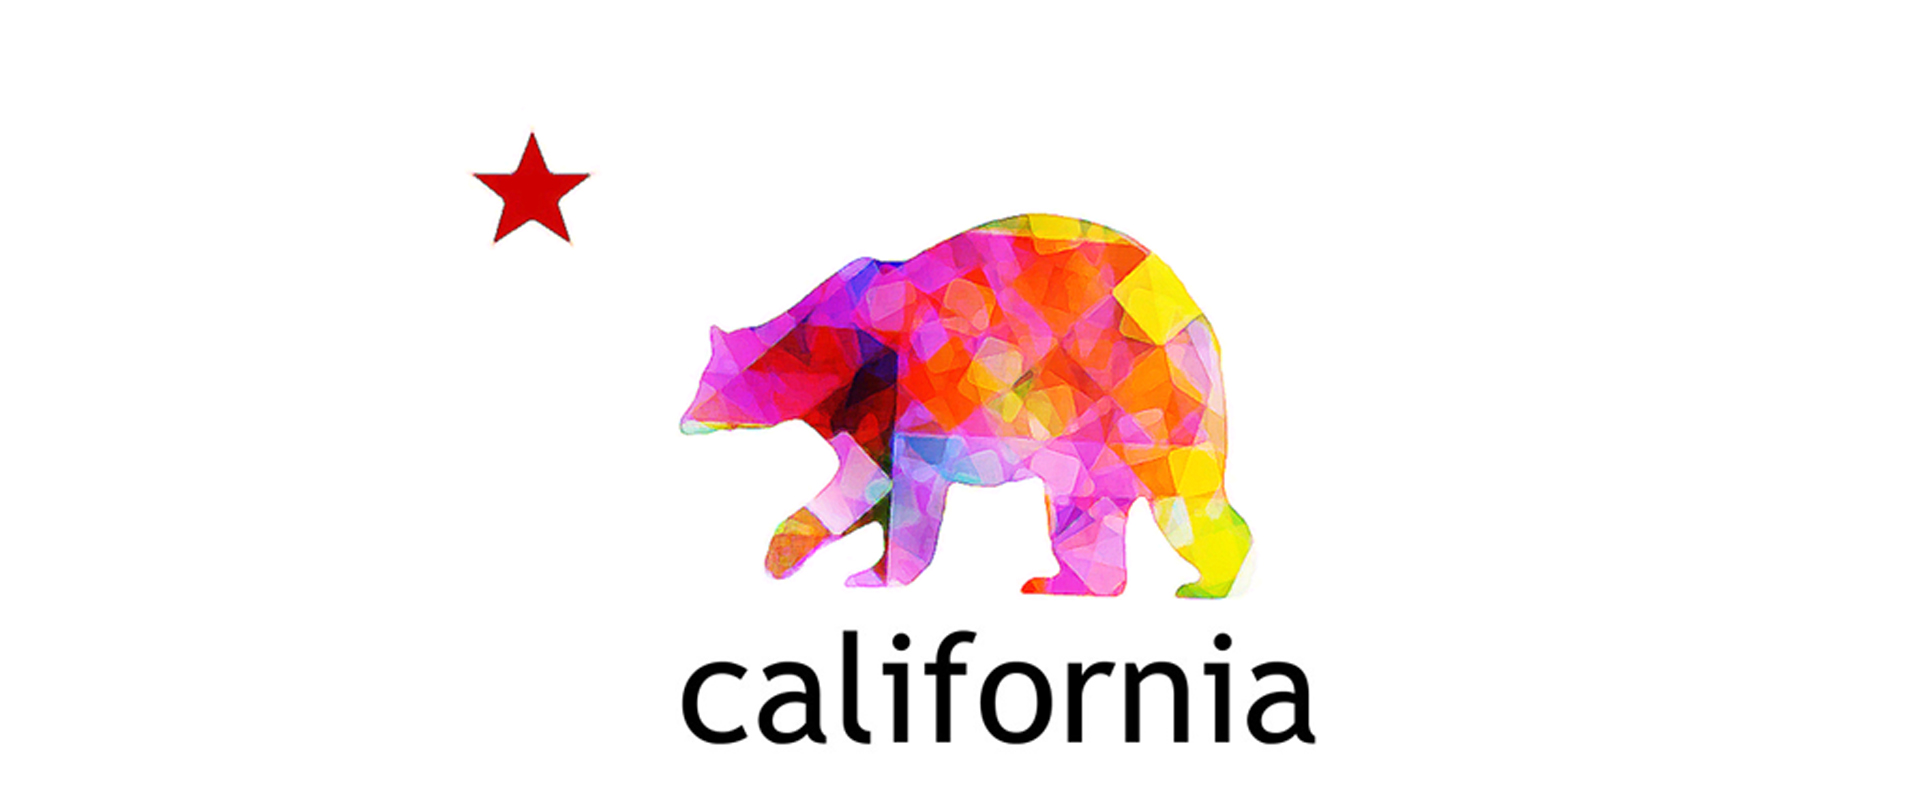 Robert Schmolze | California Bear Flag T-shirt design